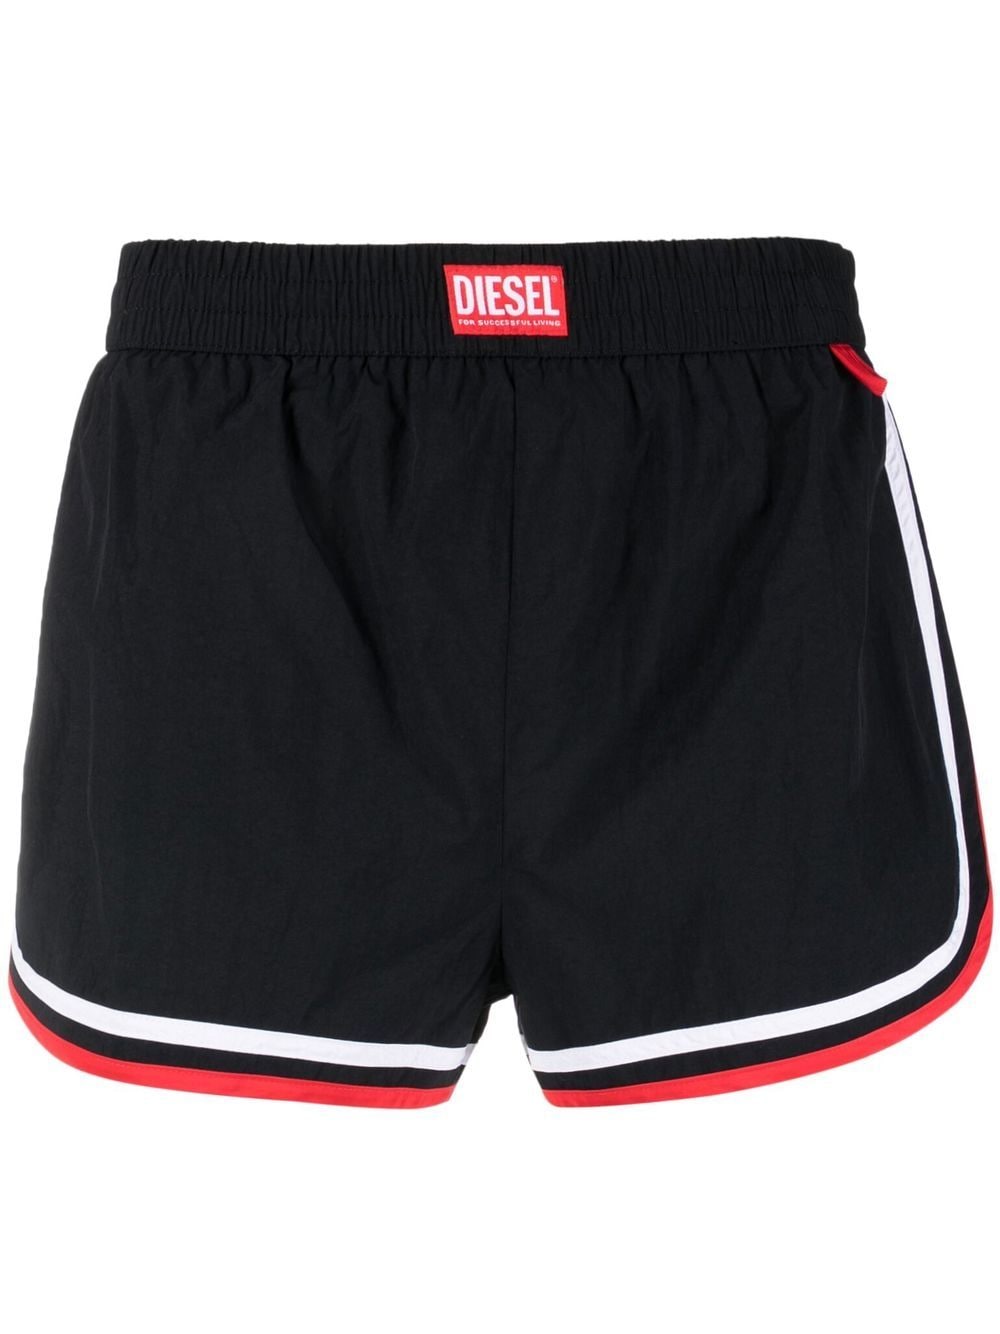 Diesel Bmbx-Reef-30 swim shorts - Black von Diesel